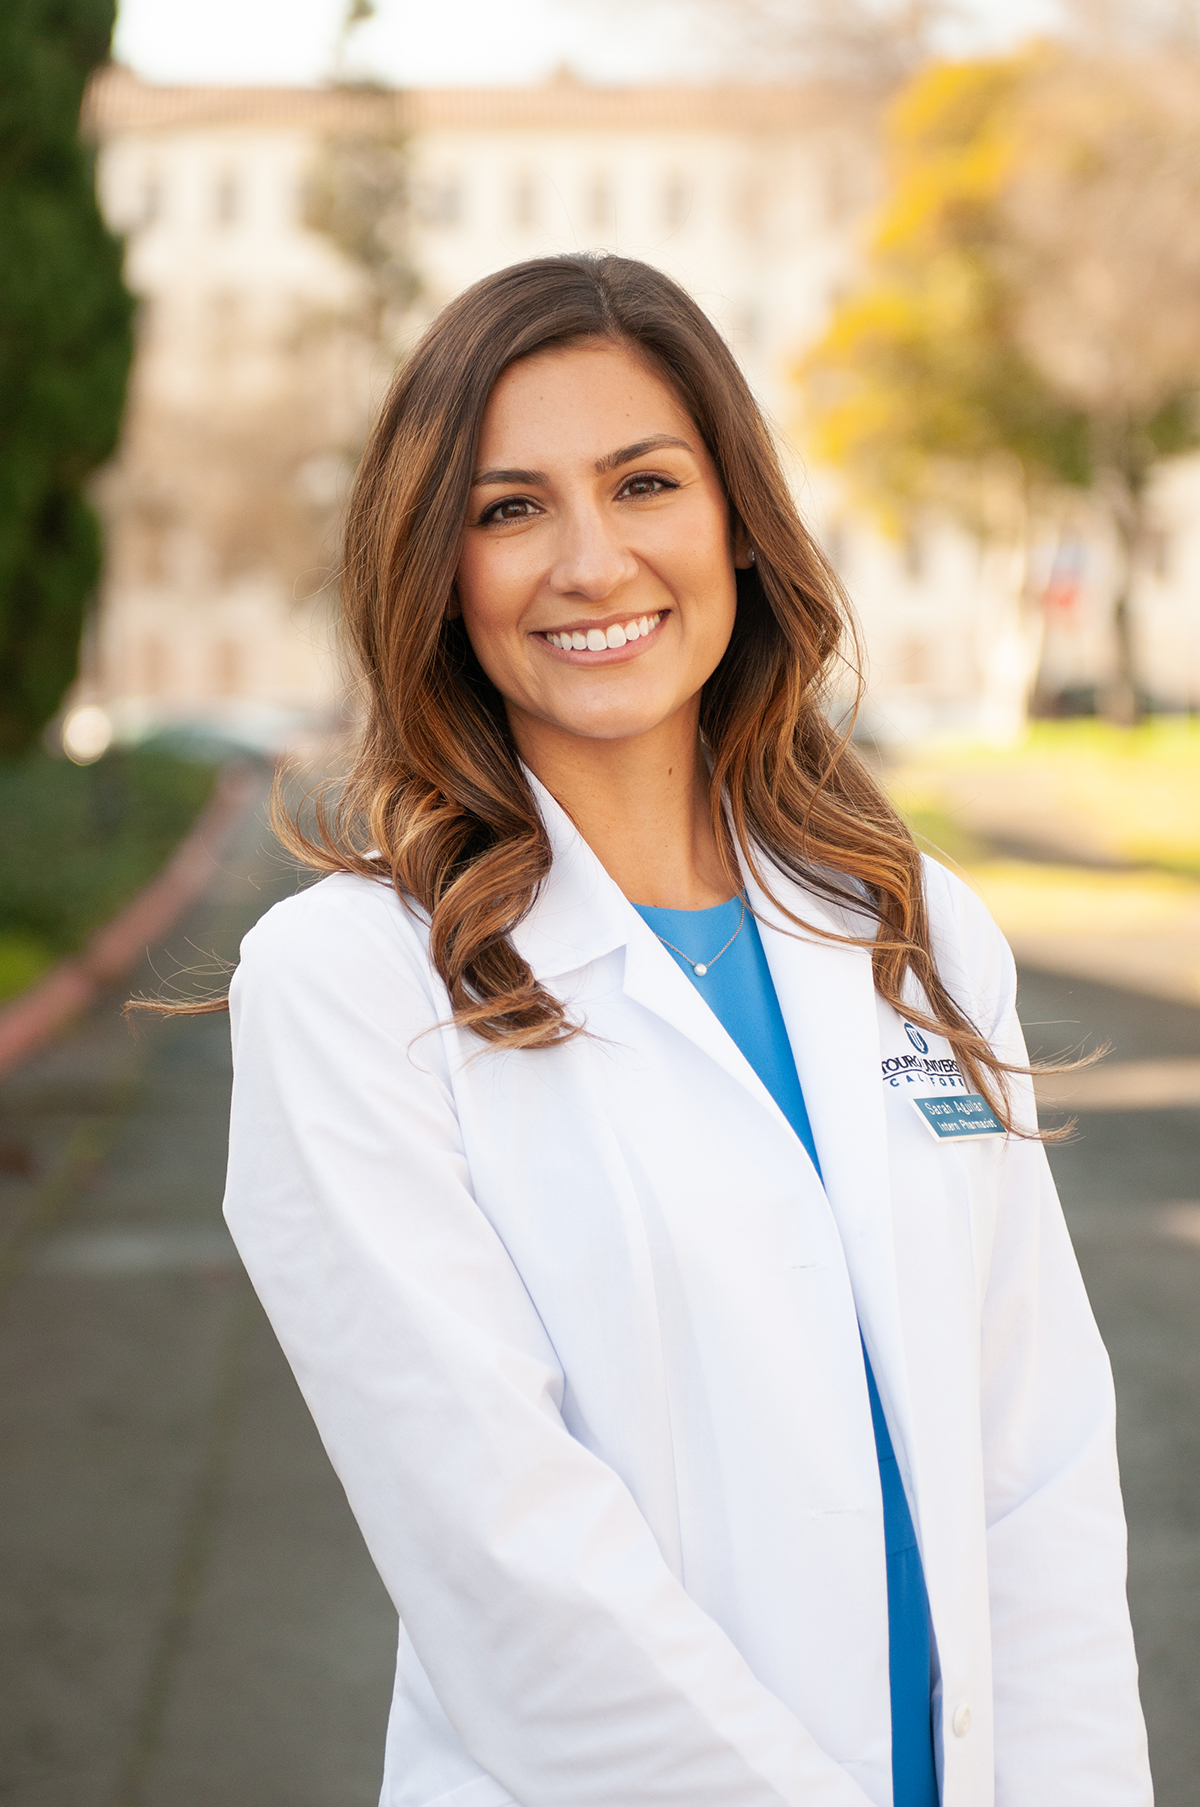 Student Pharmacist Sarah Aguilar Vreeburg